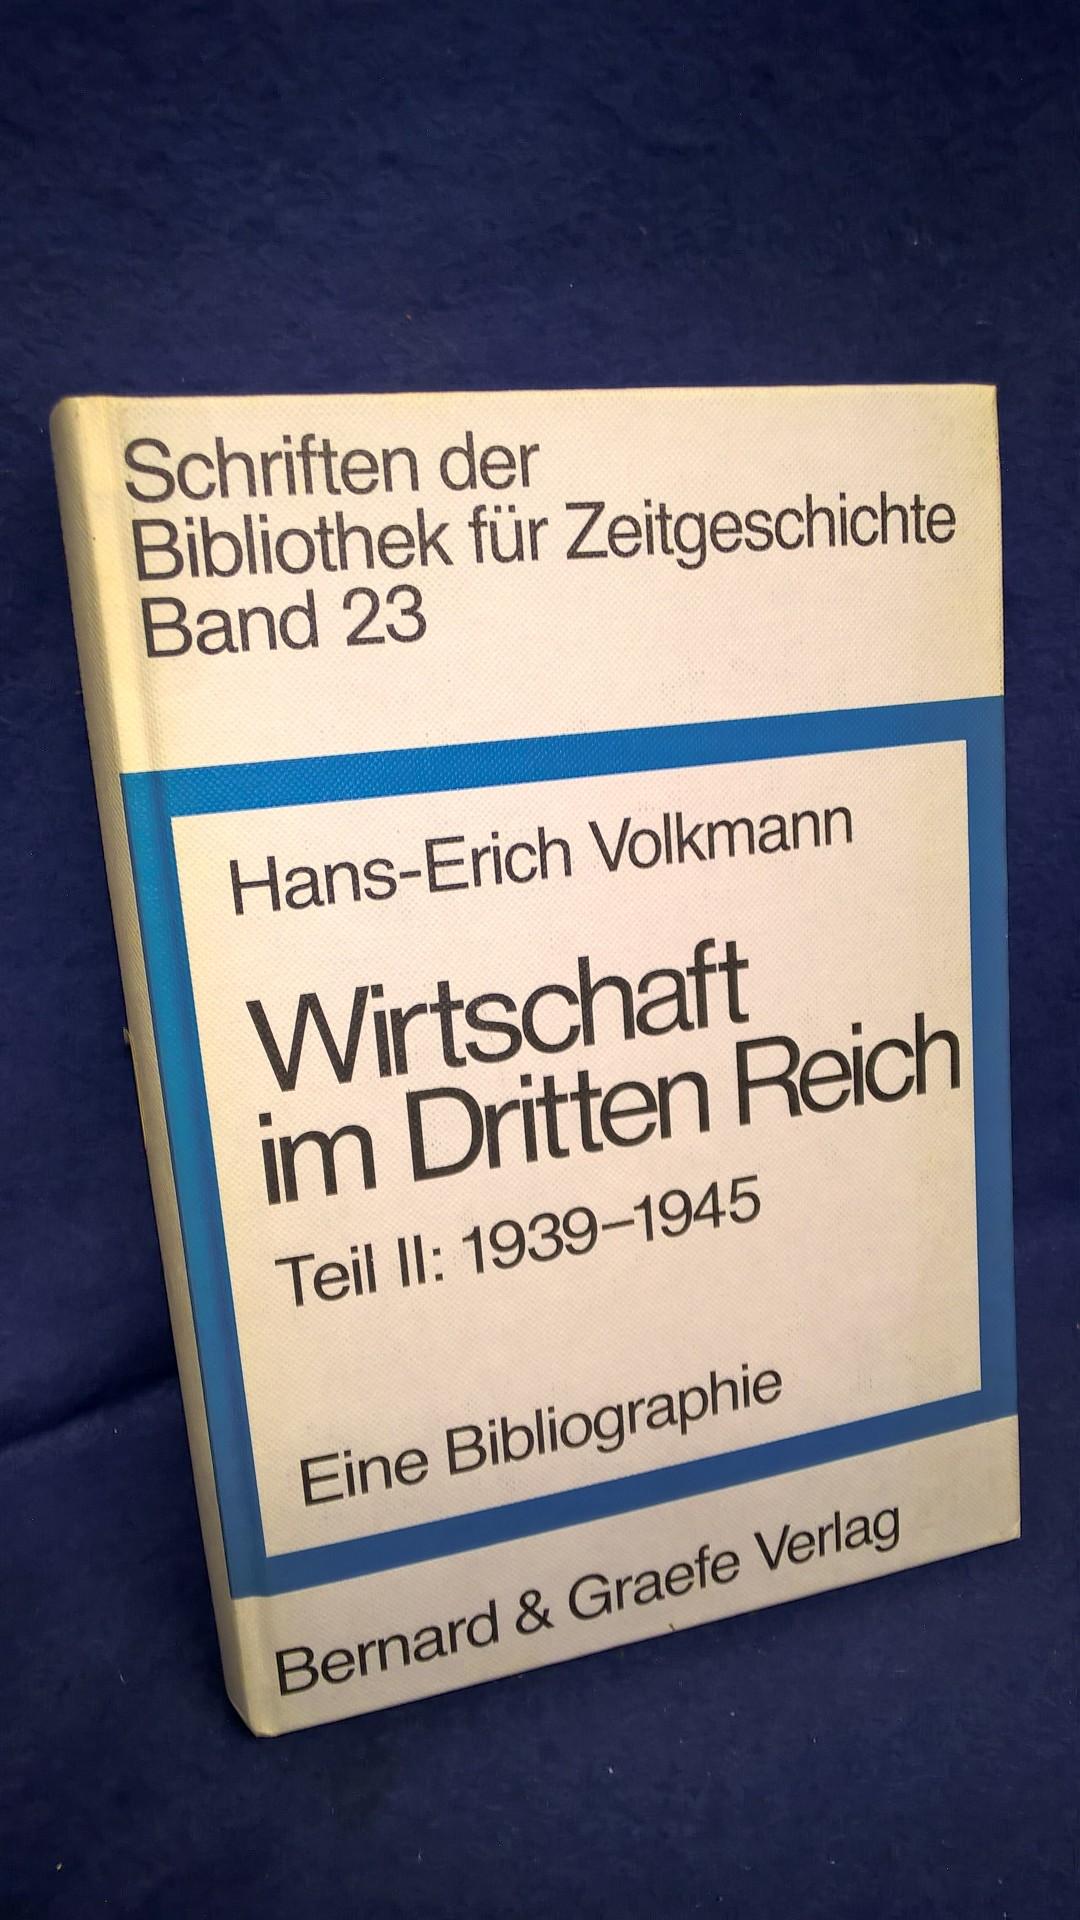 Schriften der Bibliothek für Zeitgeschichte Band 23 - Wirtschaft im Dritten Reich Teil II: 1939-1945 Eine Bibliographie